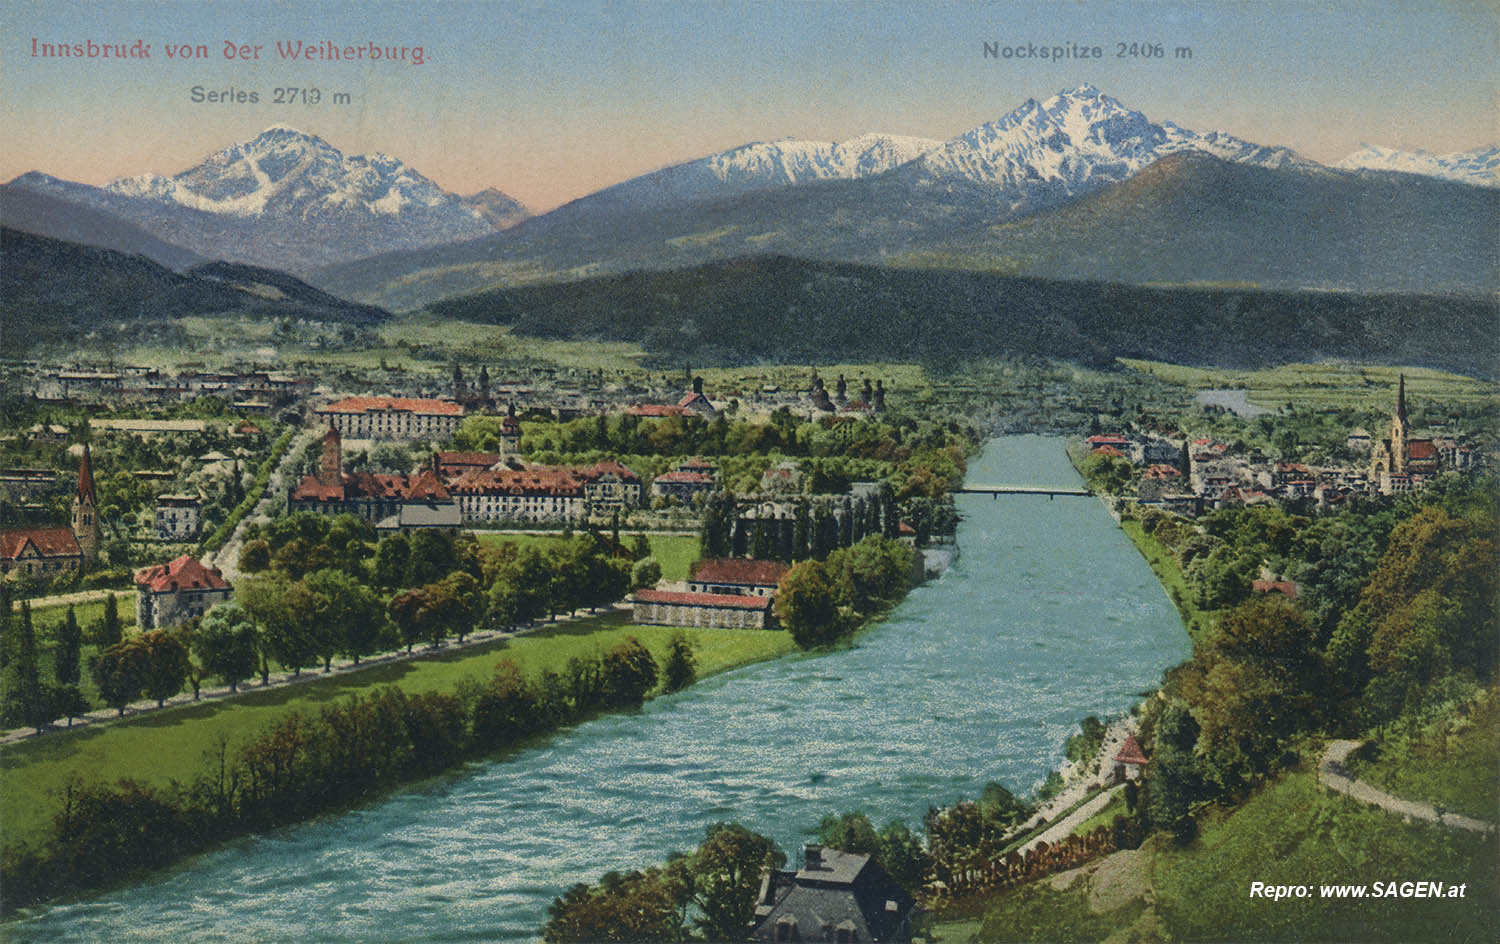 Innsbruck von der Weiherburg